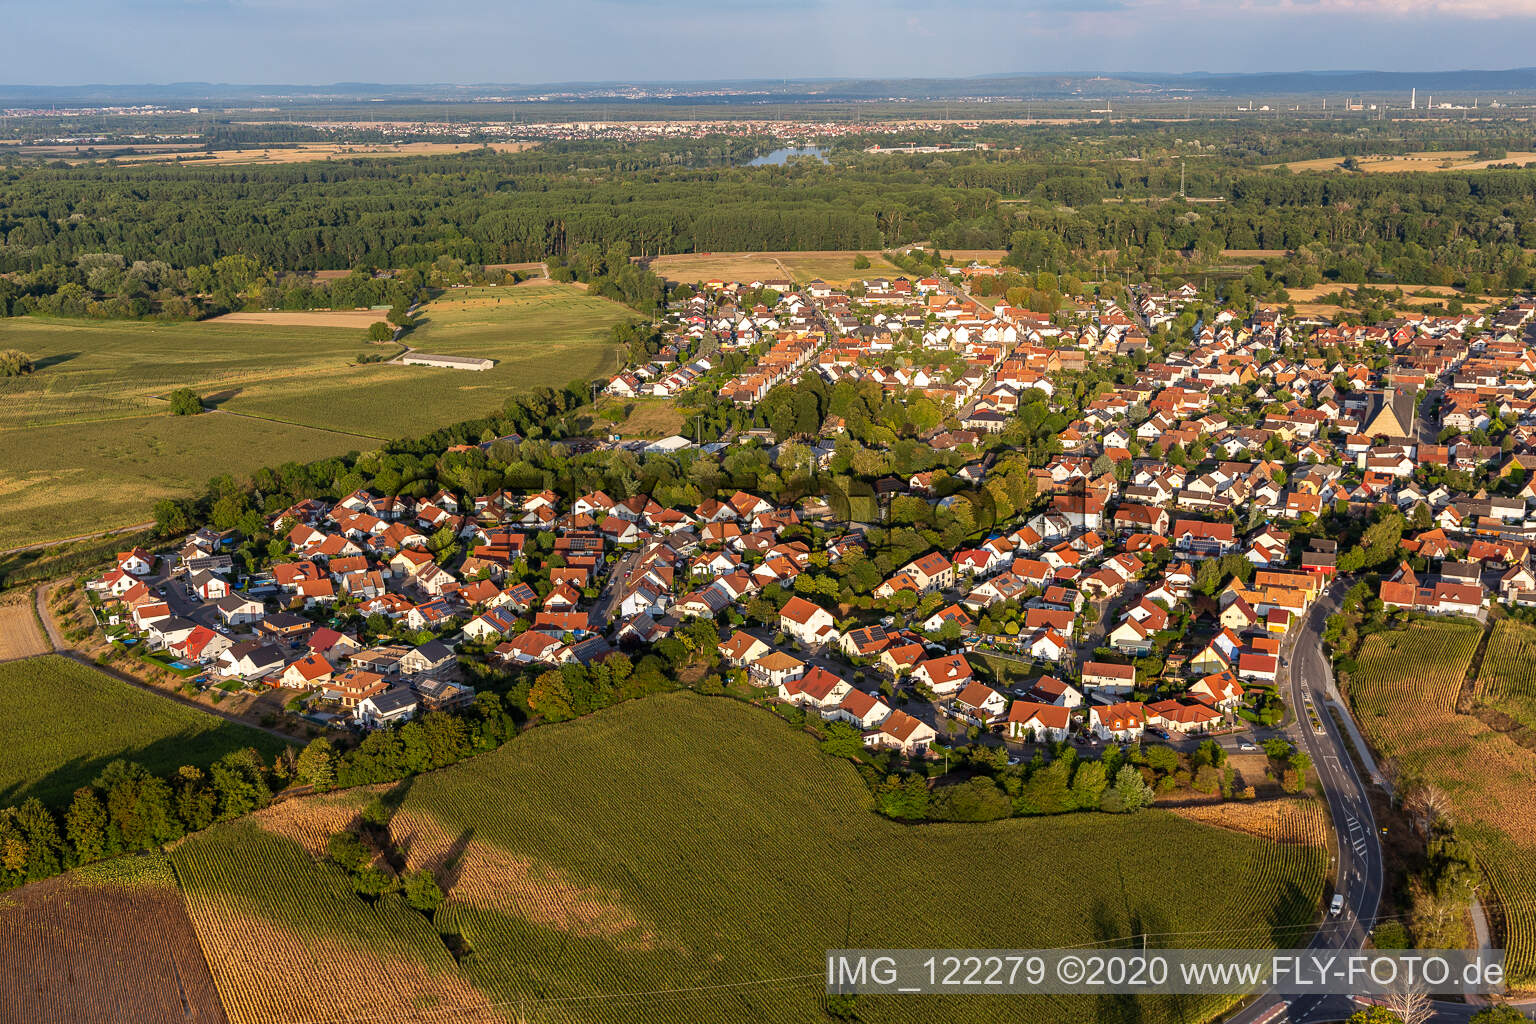 Leimersheim im Bundesland Rheinland-Pfalz, Deutschland aus der Luft betrachtet